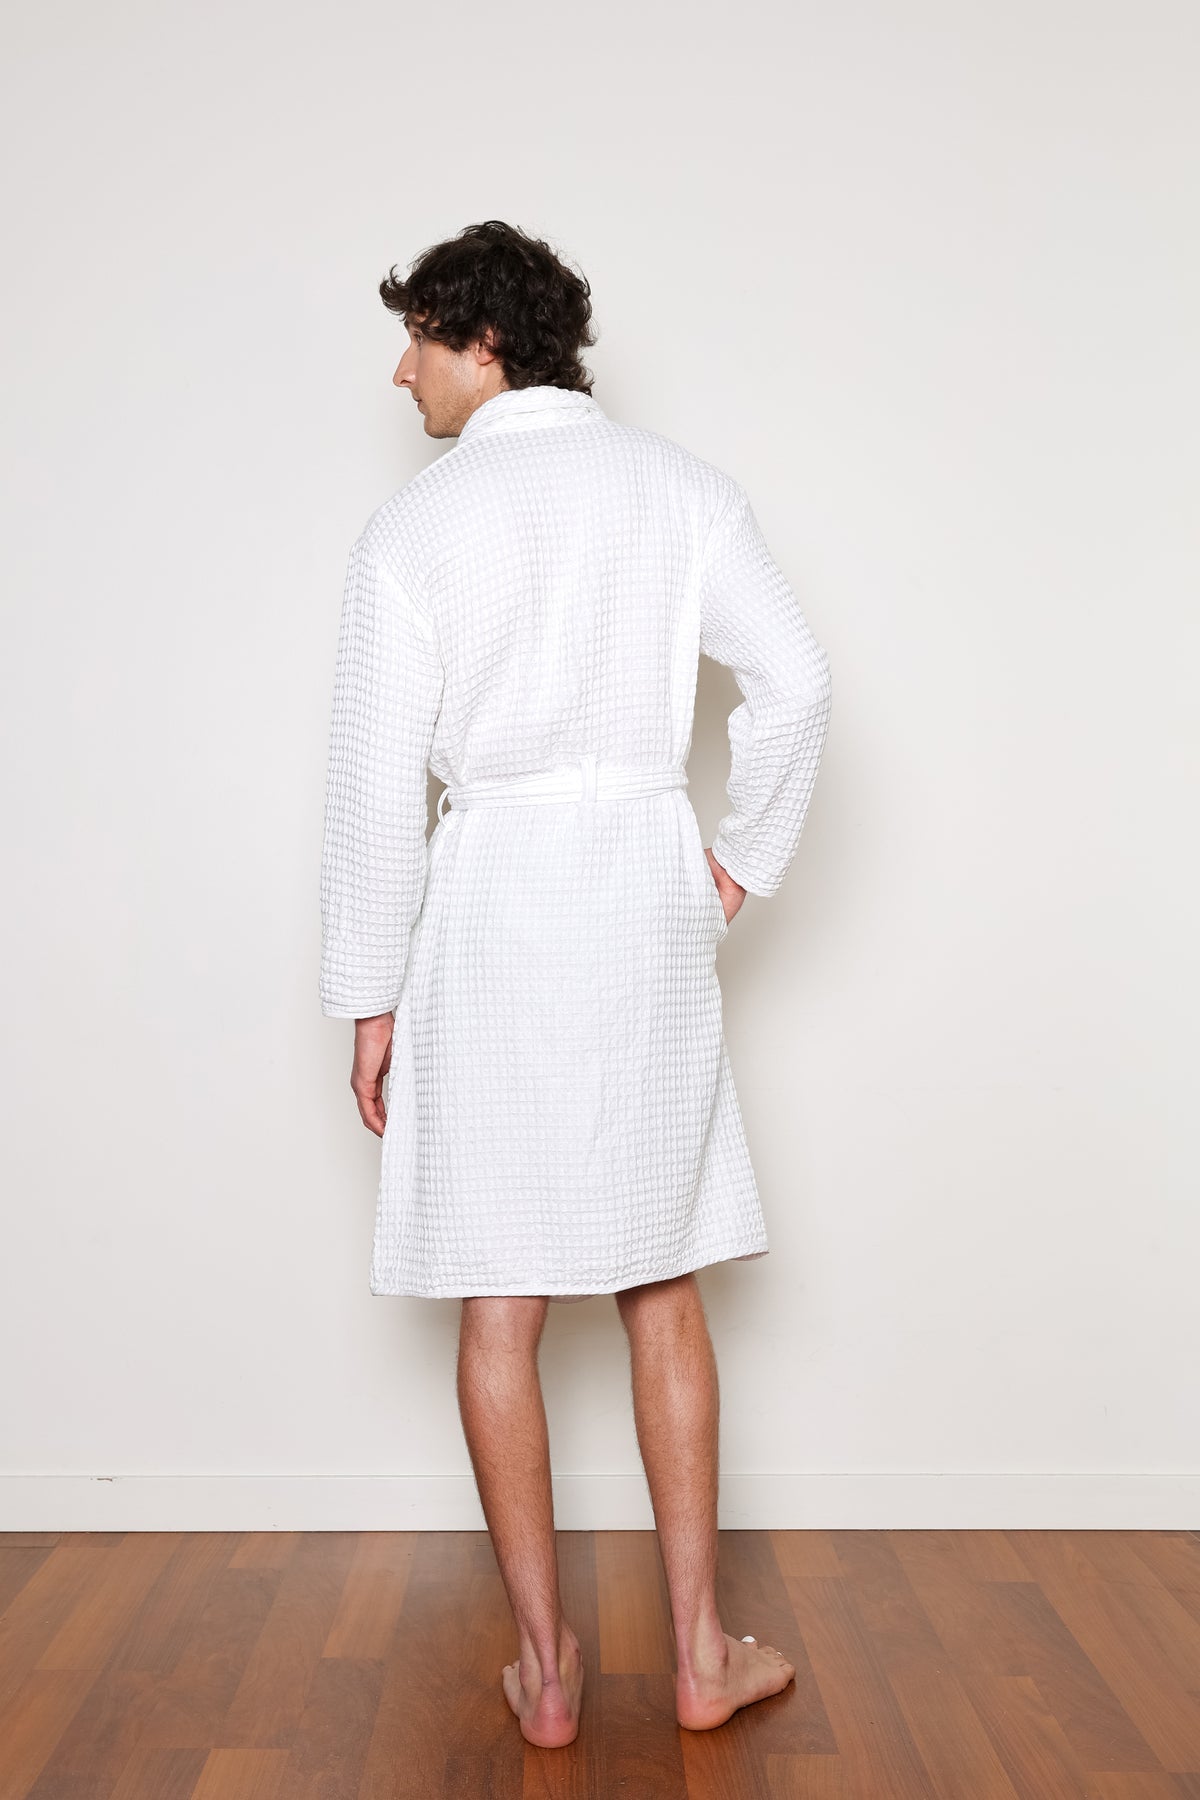 The Harmony Bath Robe by Tofino Towel Co.